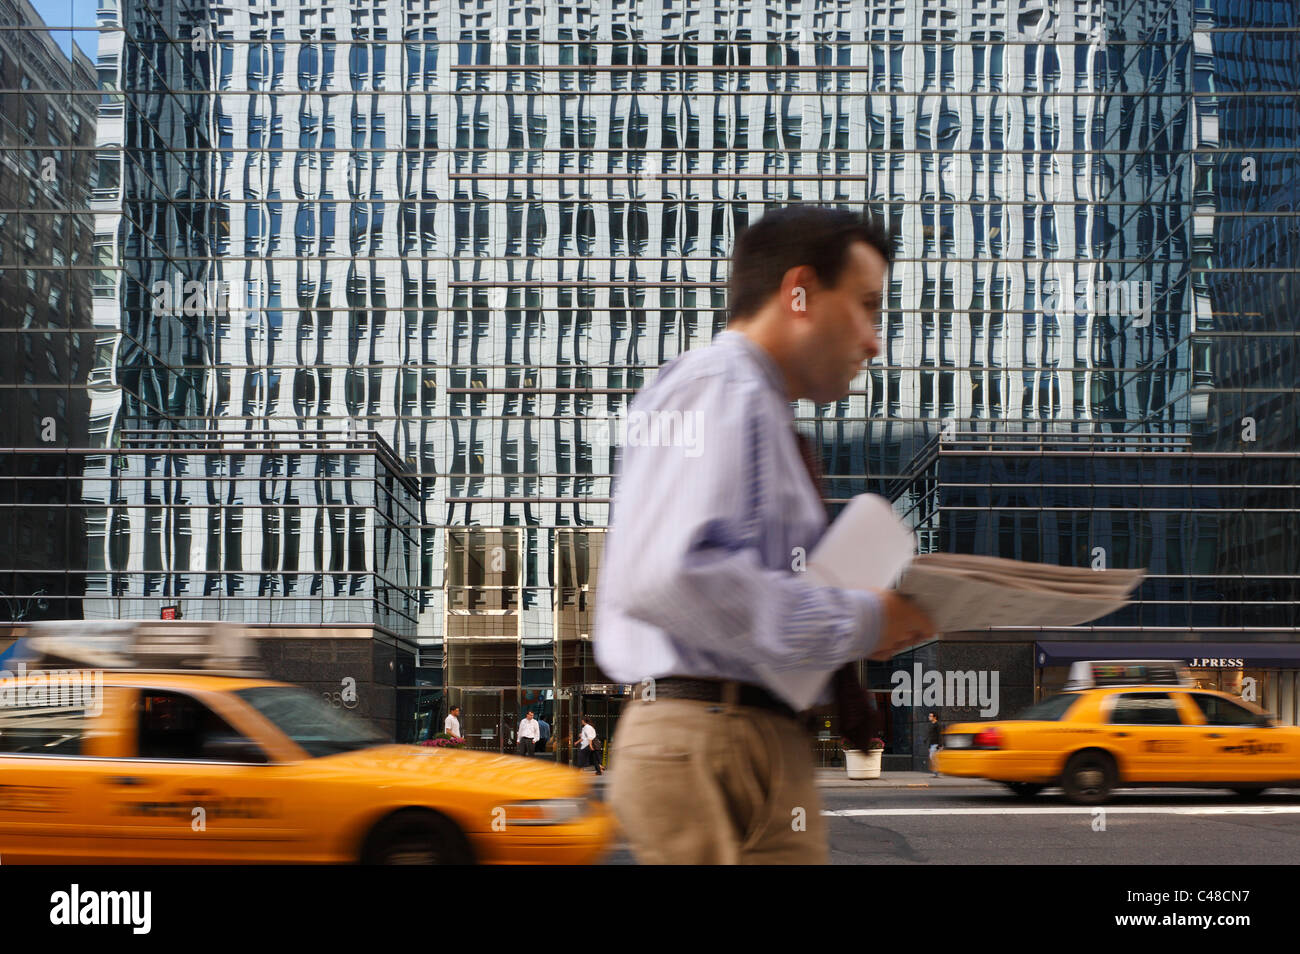 Un vetro riflettente facciata, taxi gialli e un uomo, New York City, Stati Uniti d'America Foto Stock